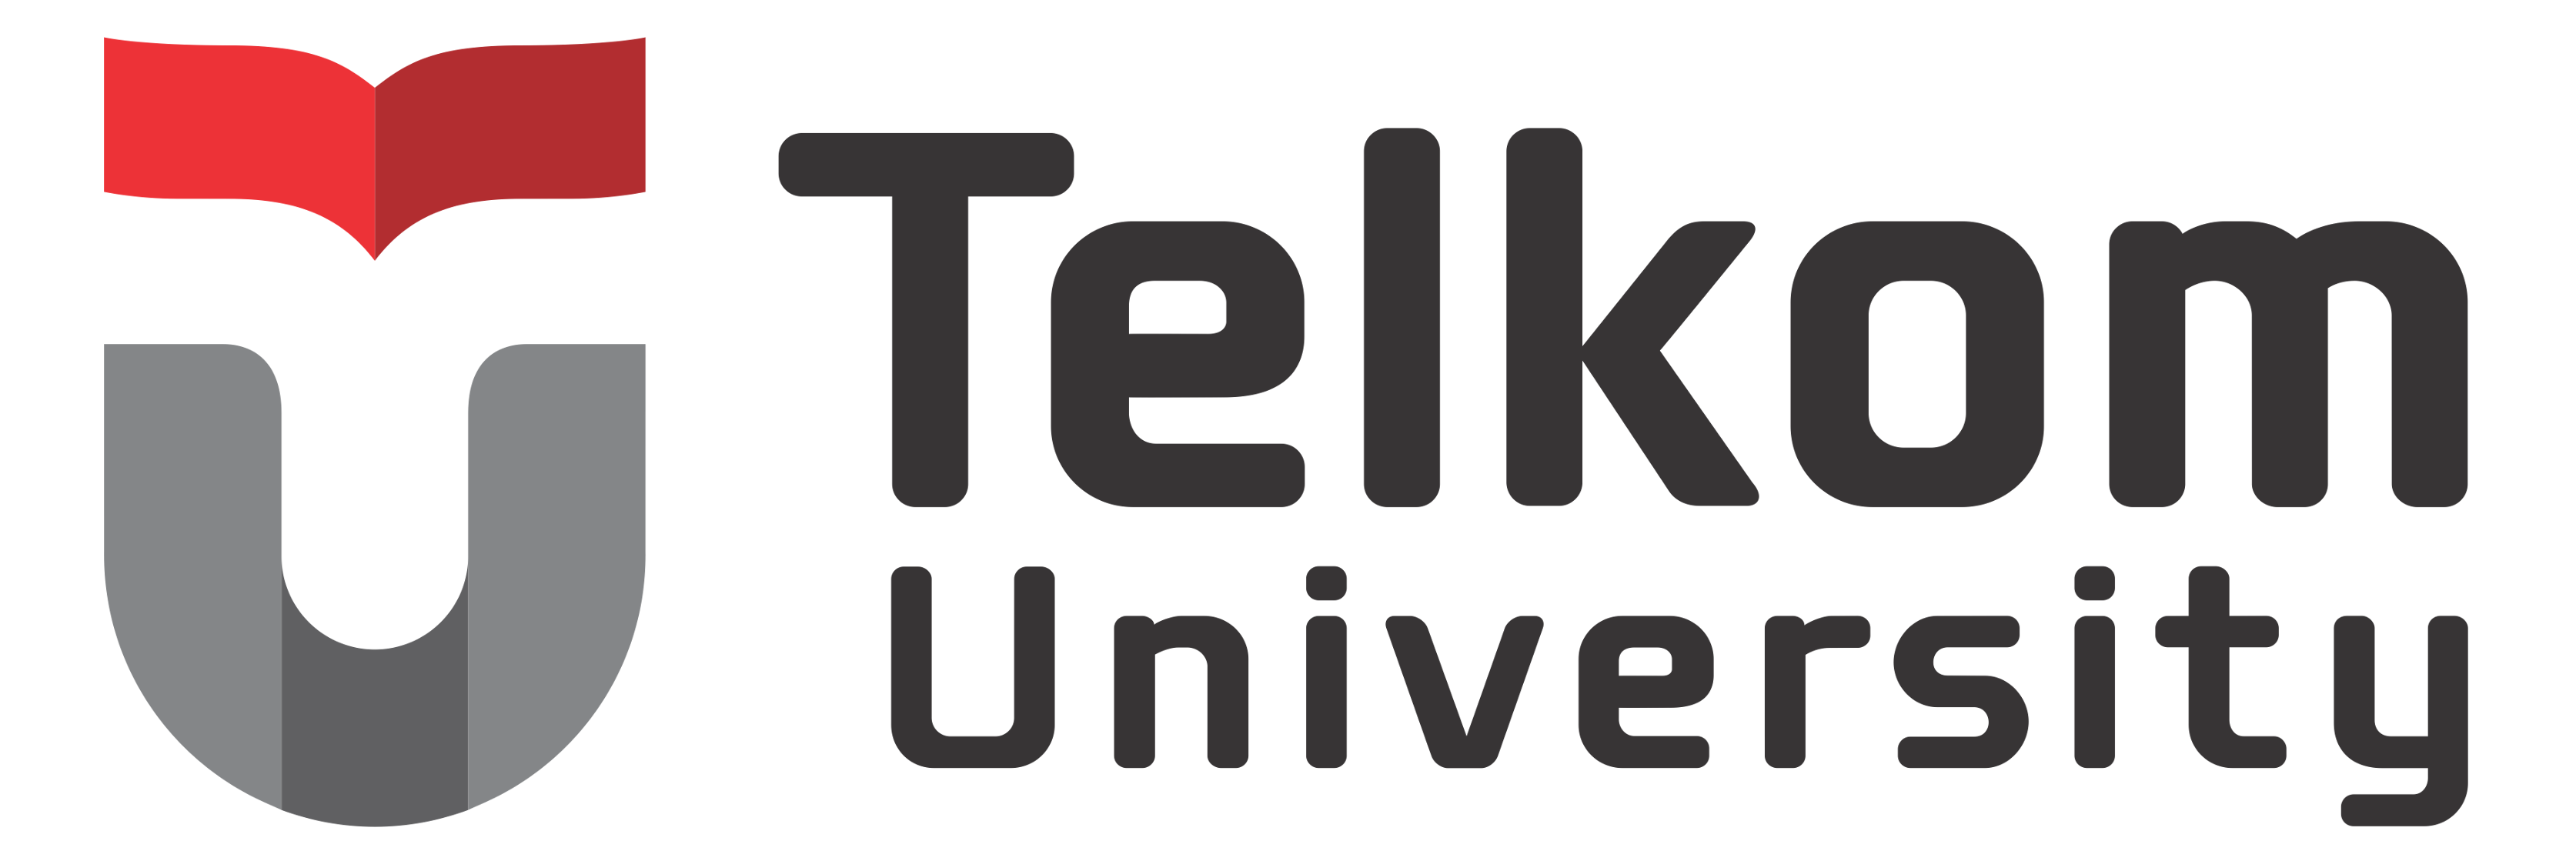 Logo_Telkom_University